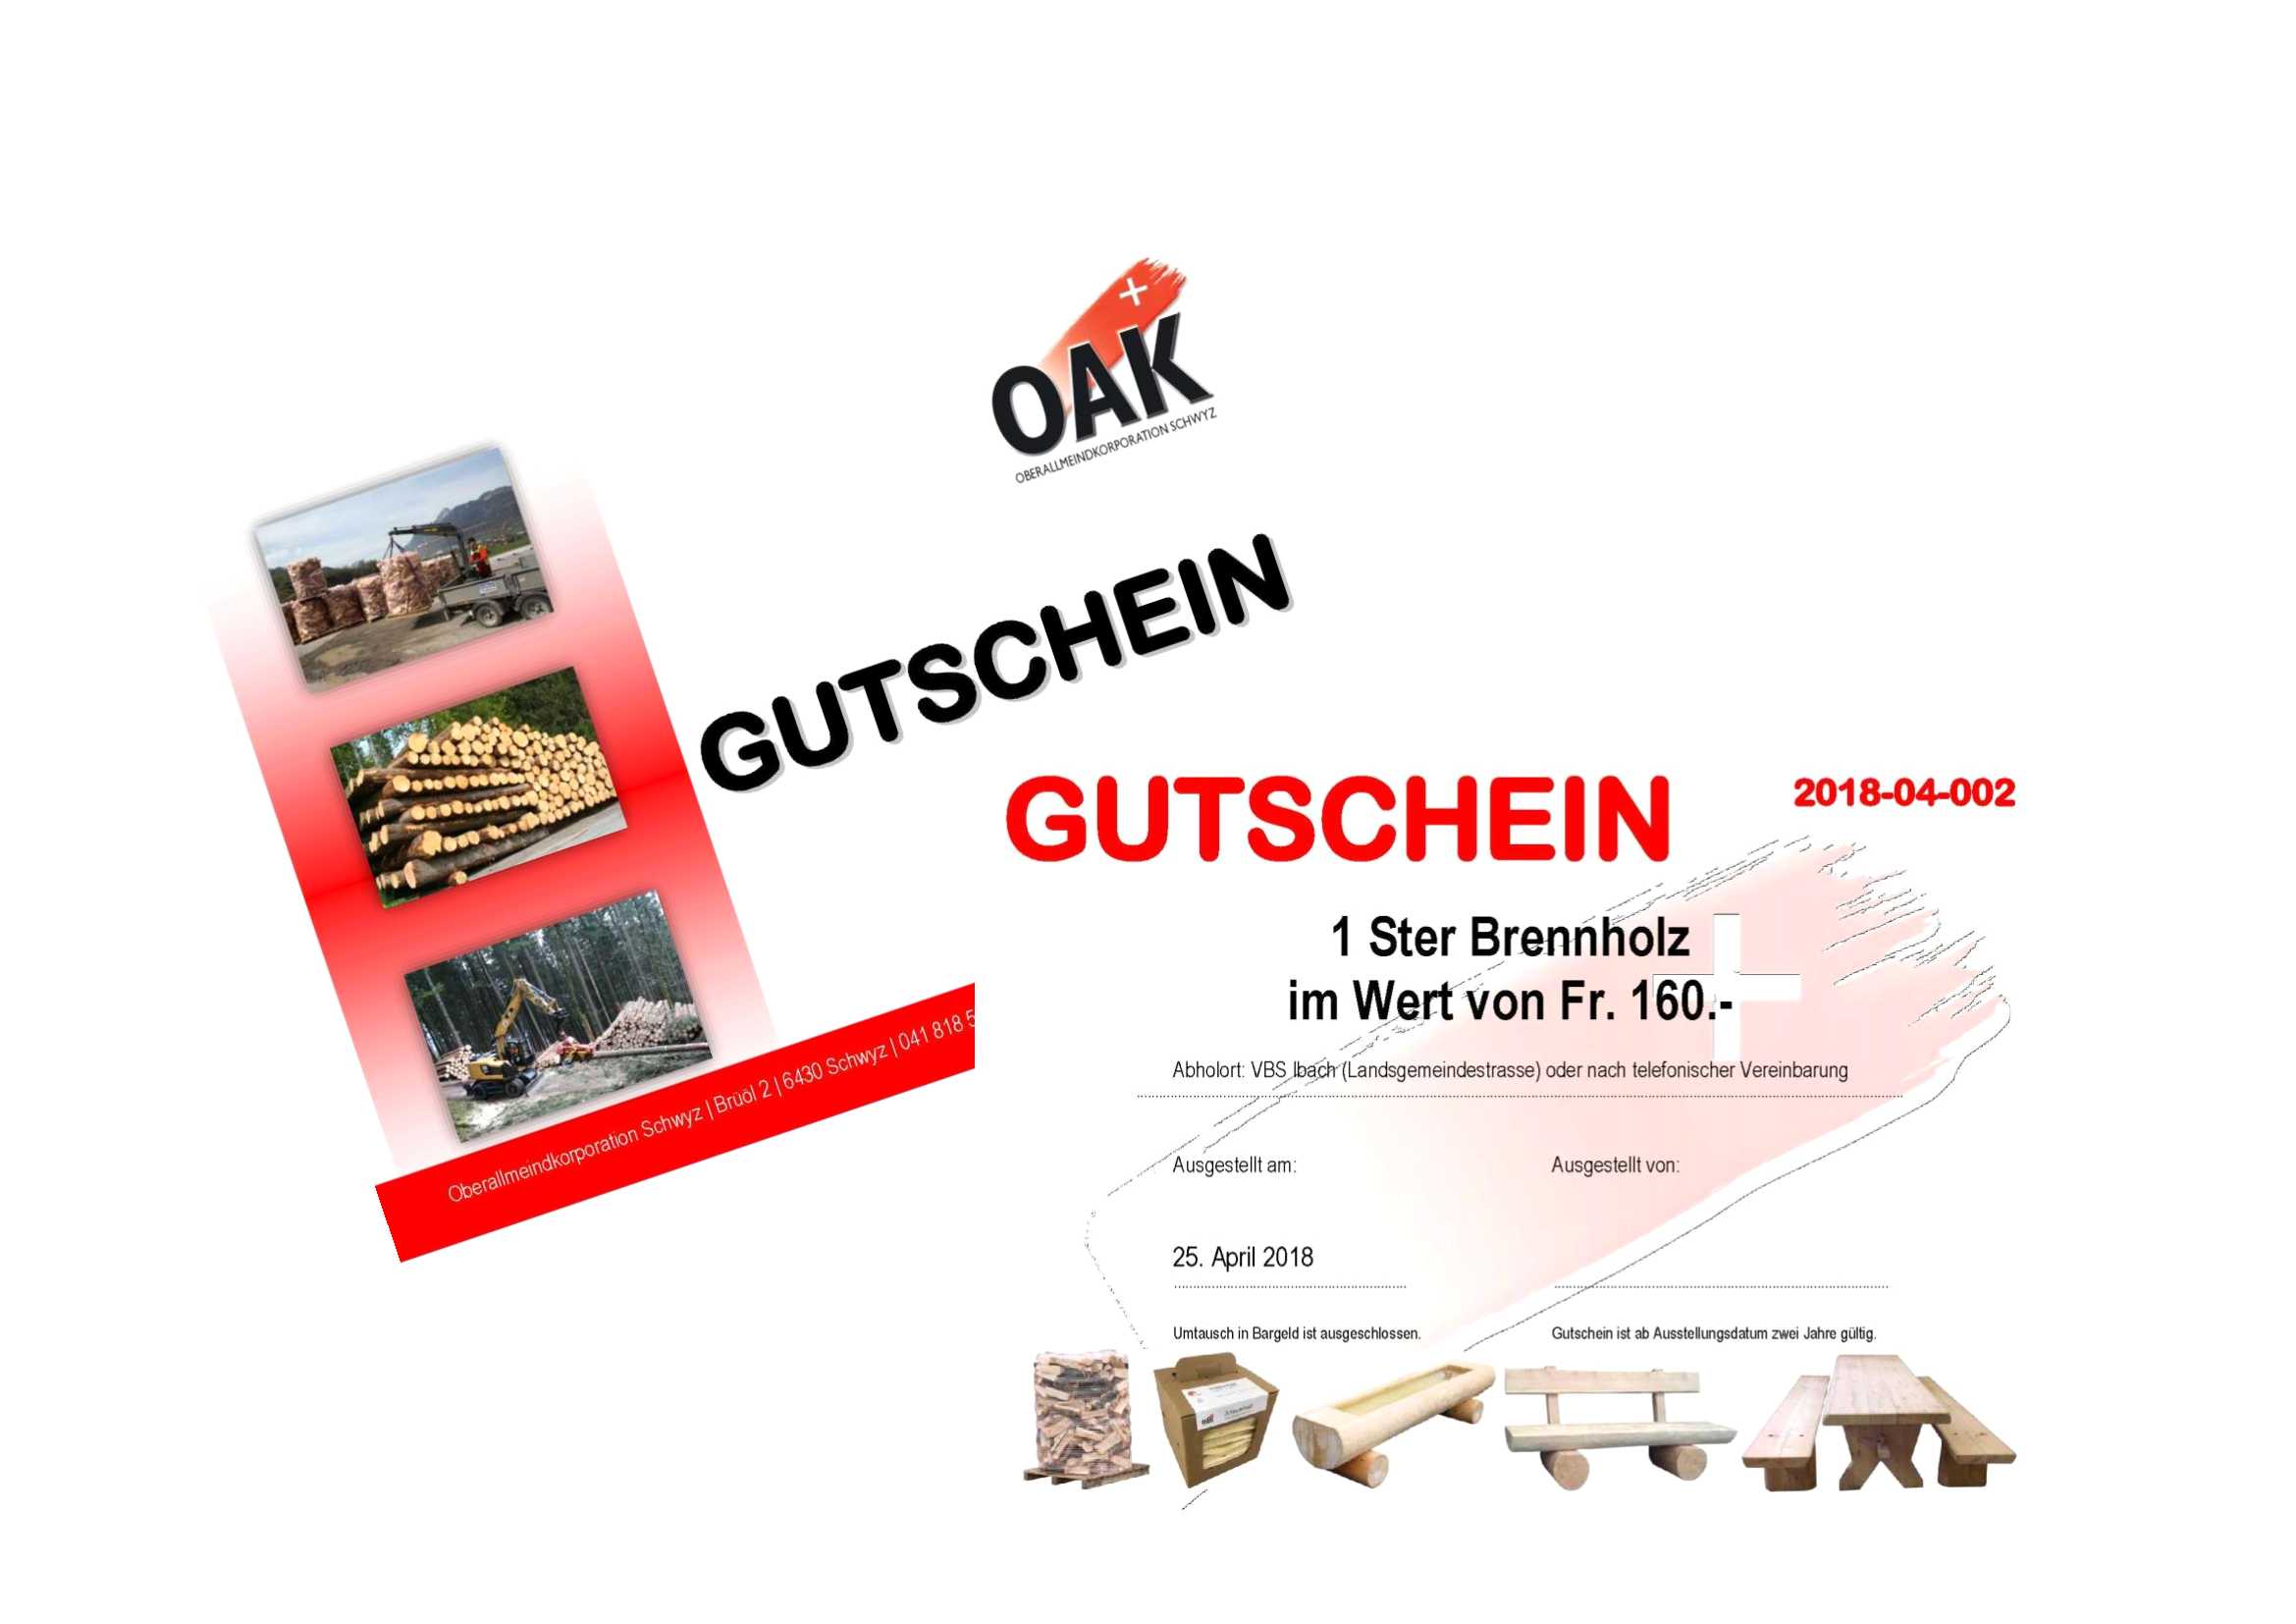 OAK Gutschein für Brennholz und weitere Produkte